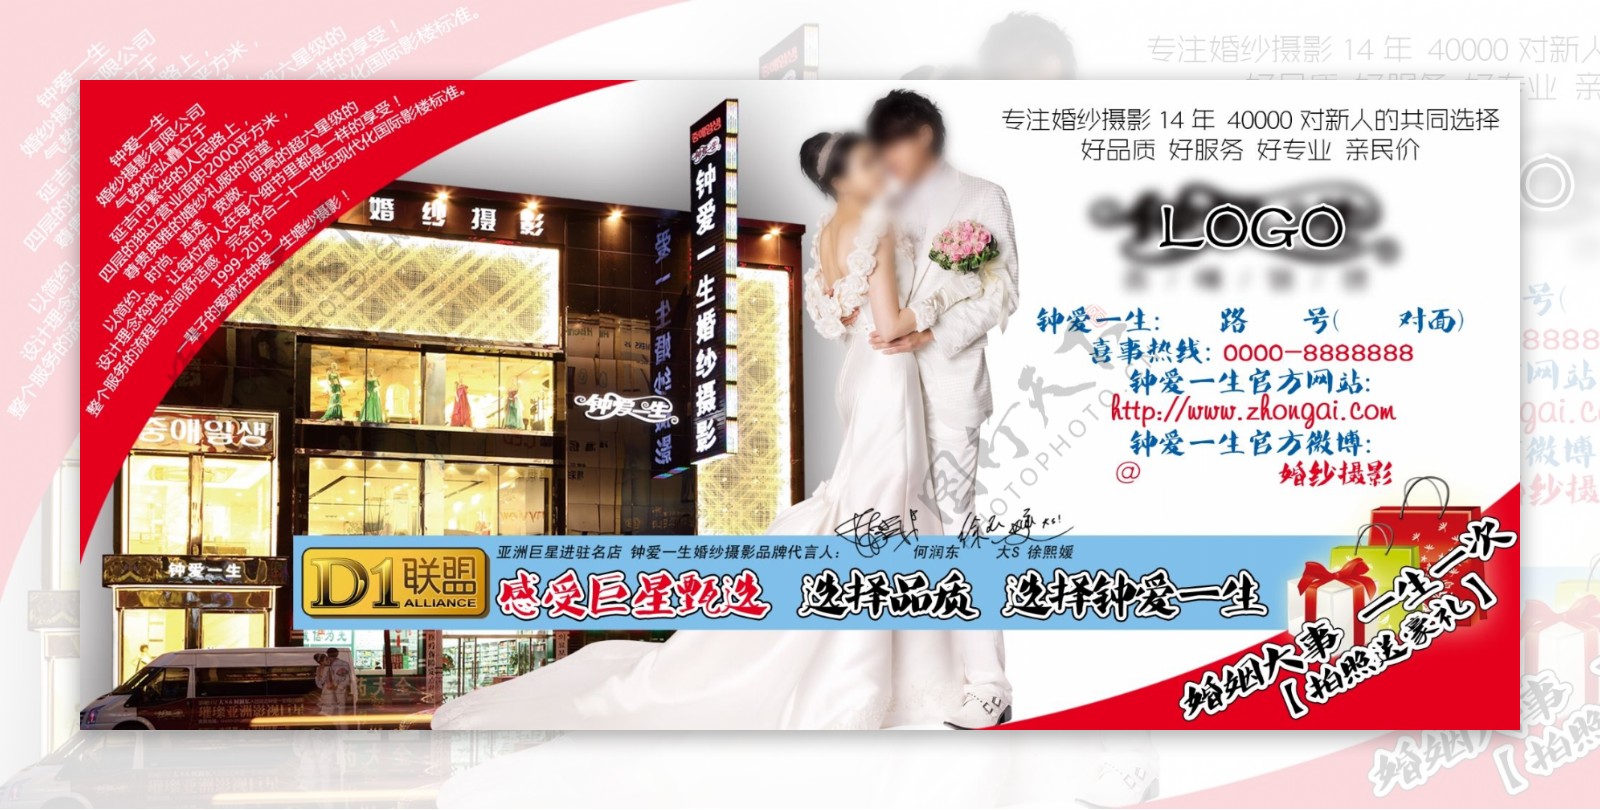 婚纱影楼宣传单广告牌图片